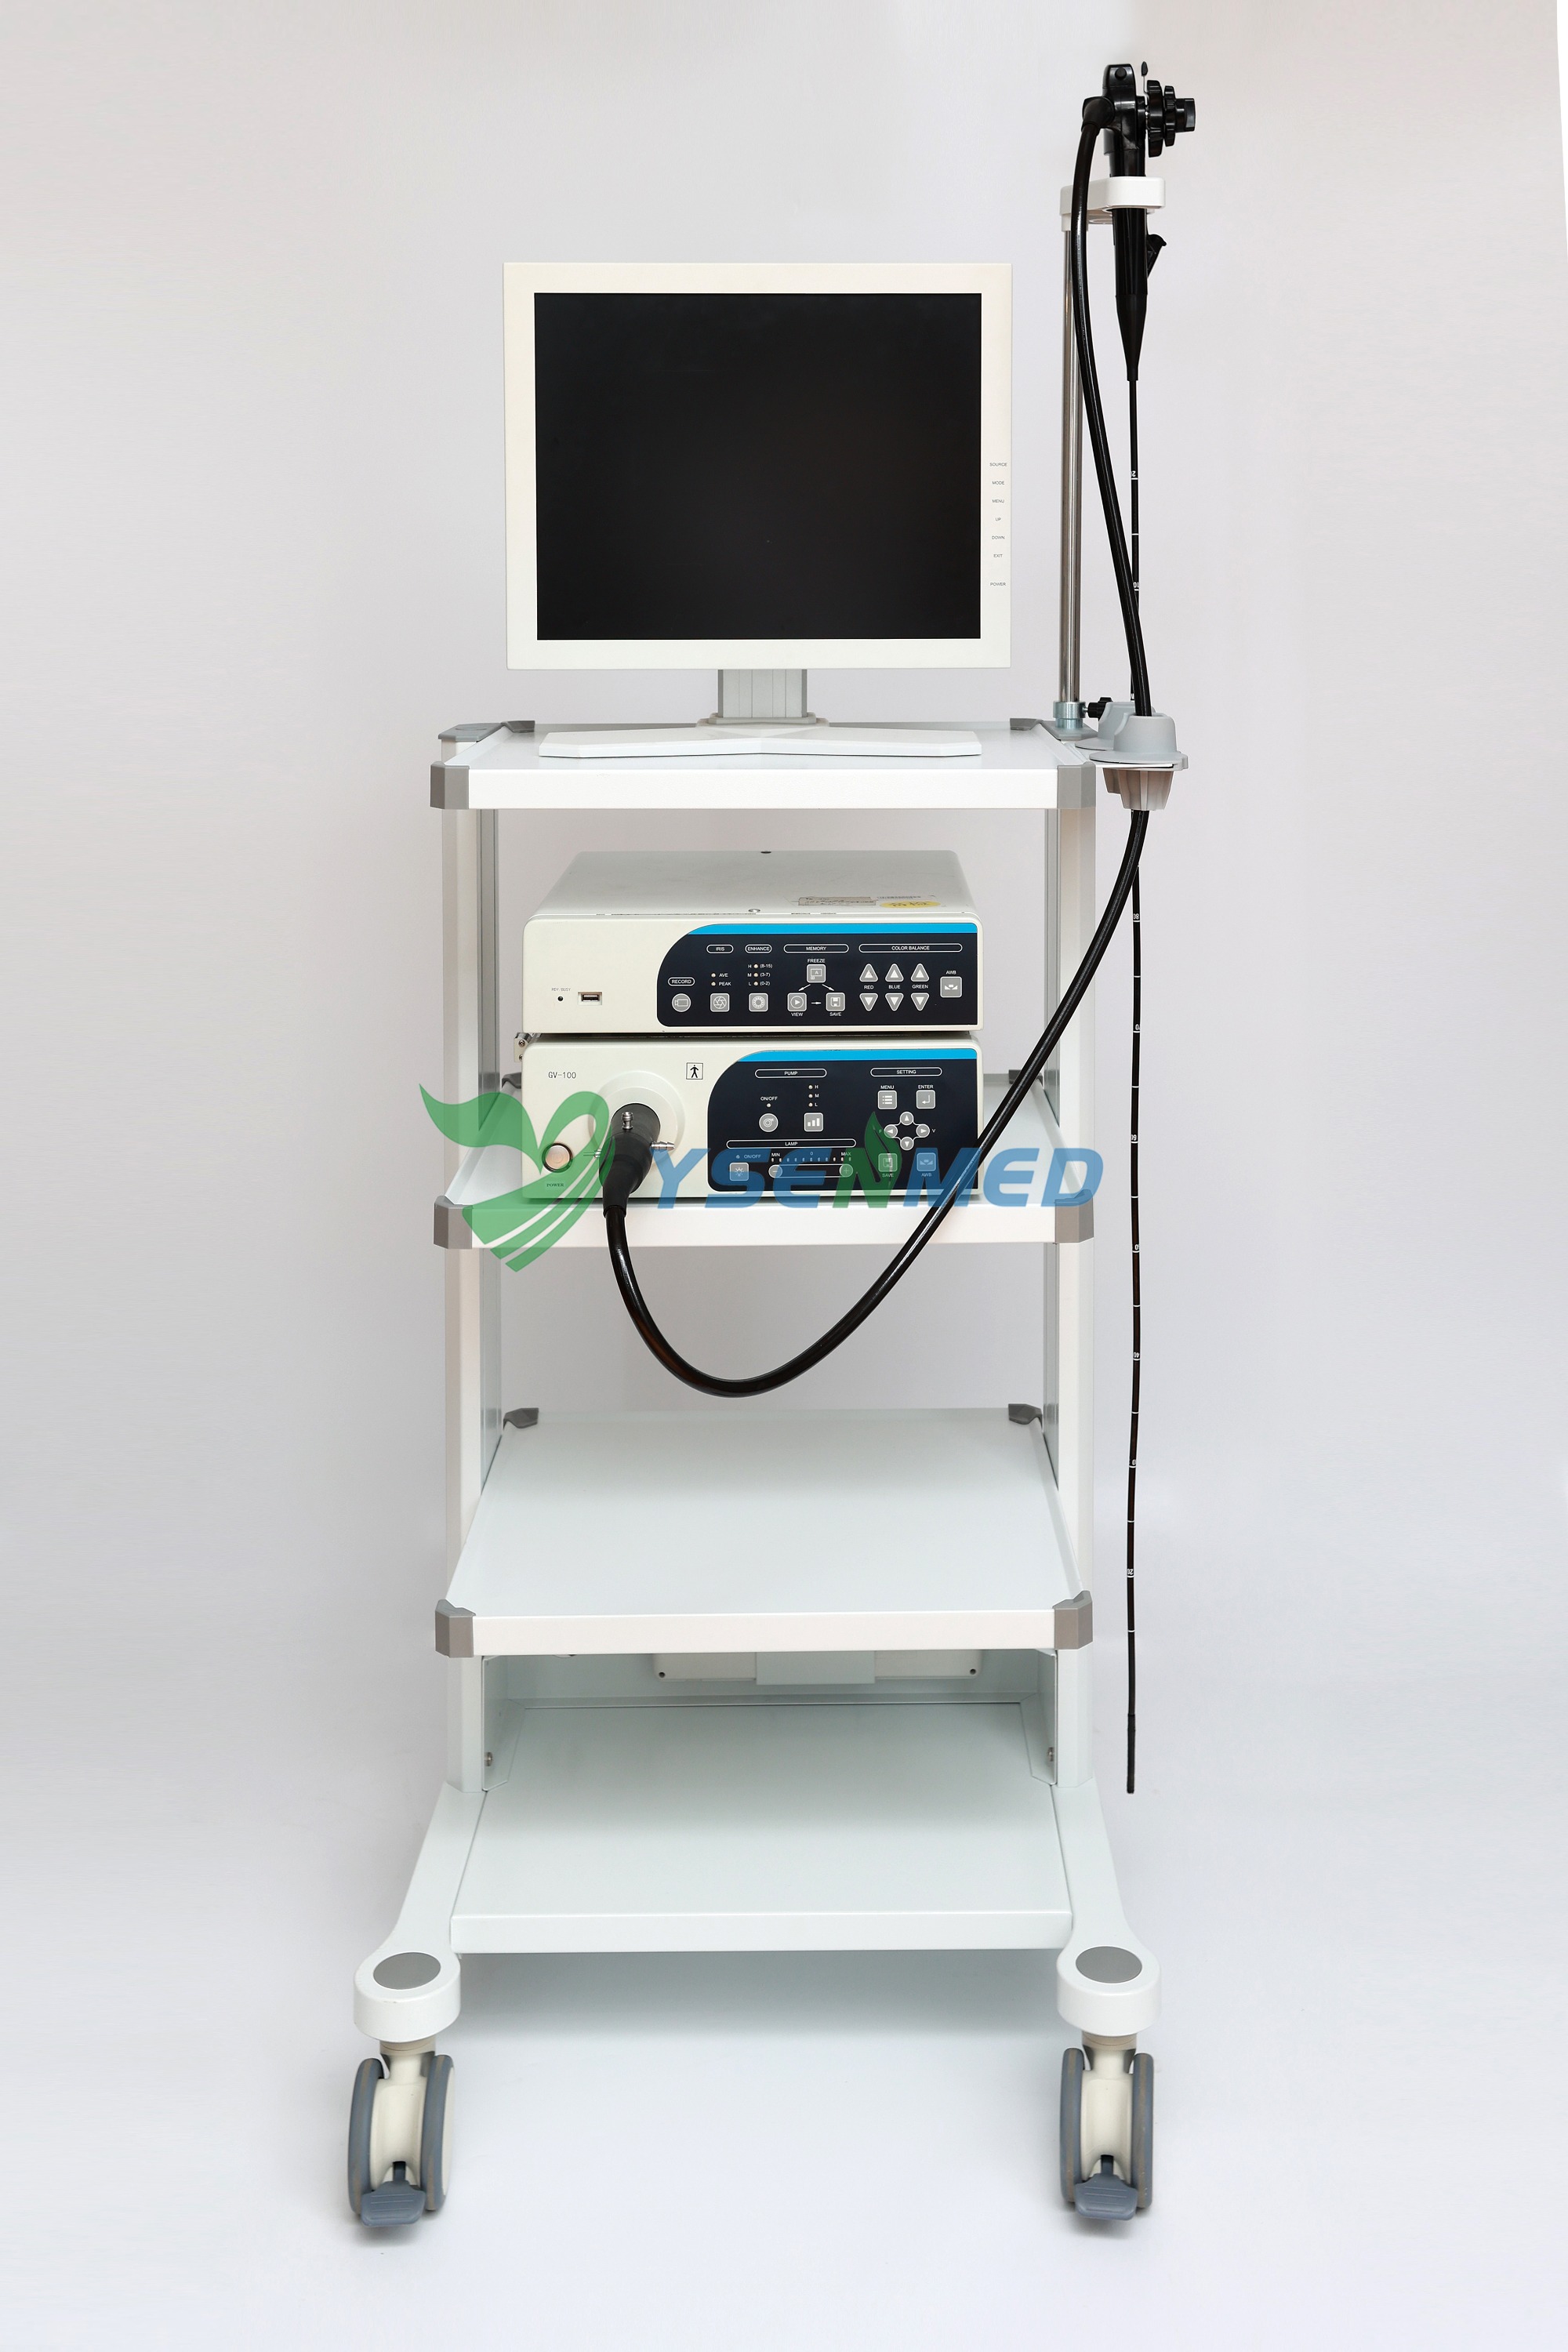 Le système d'endoscope vidéo YSVME-200 HD est le best-seller parmi nos endoscopes, en raison de ses performances d'imagerie claires et de son tarif éq